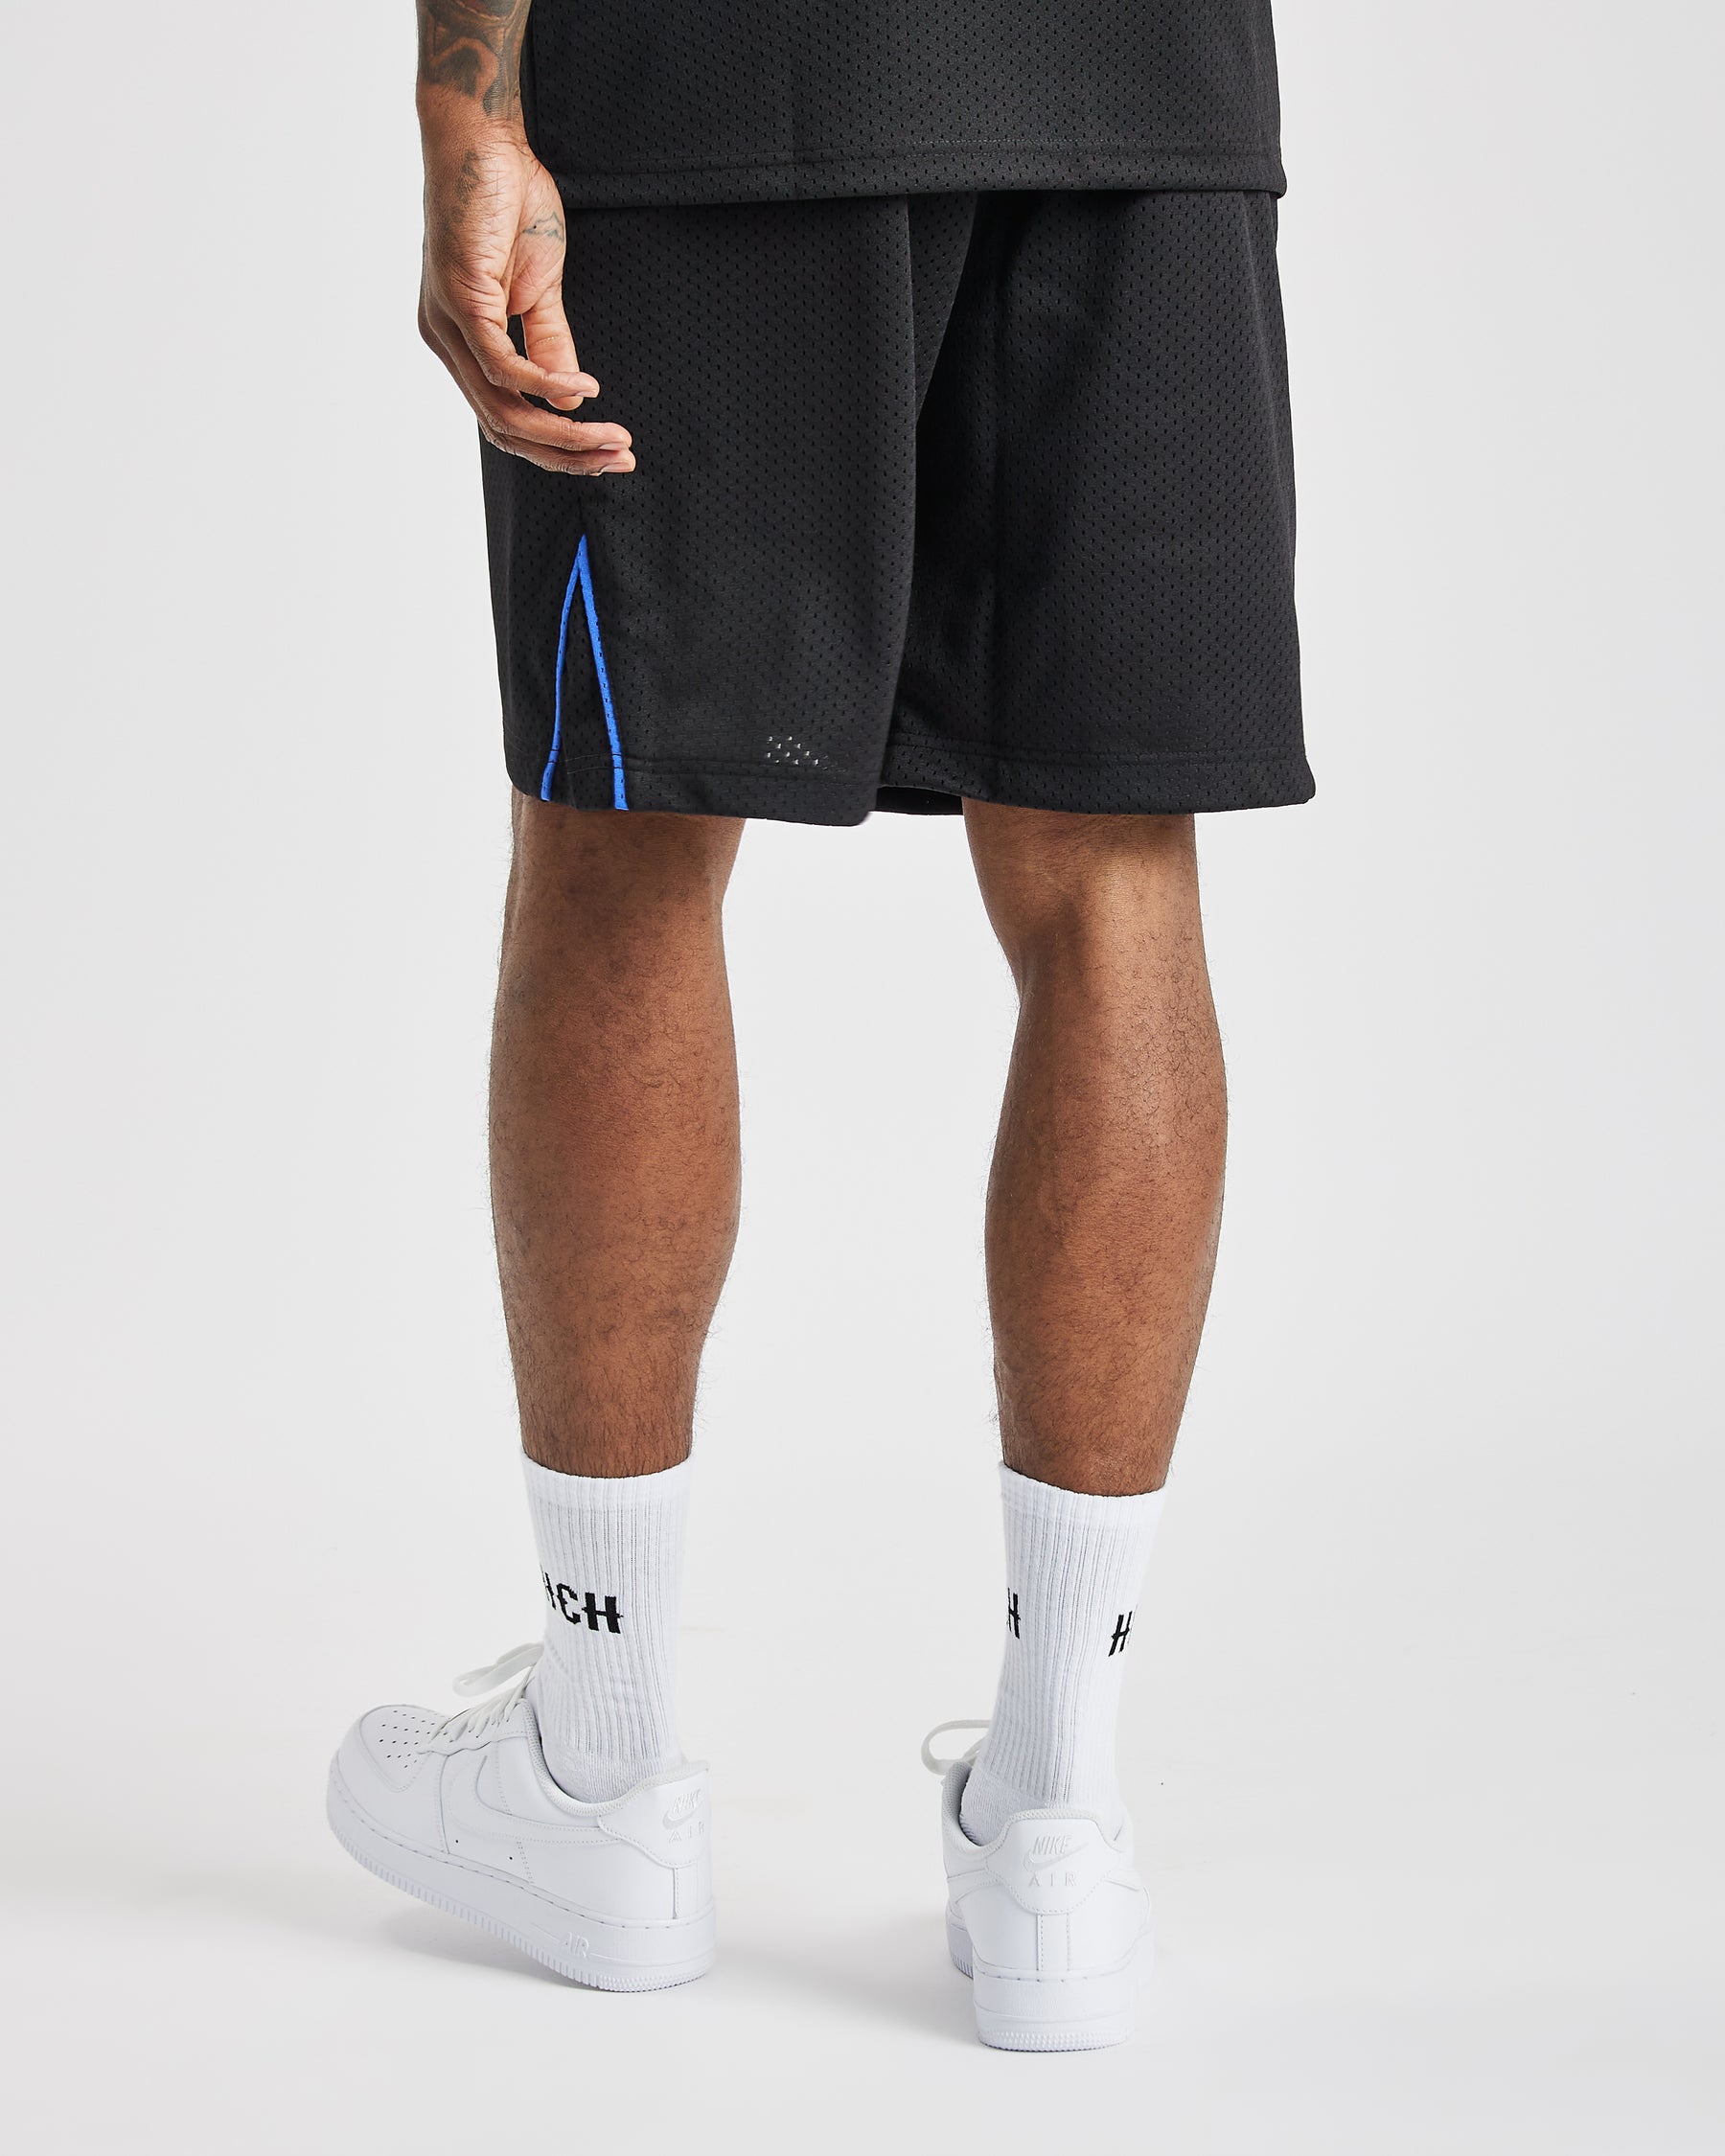 Stadium Basketball Shorts - Black/White/Blue